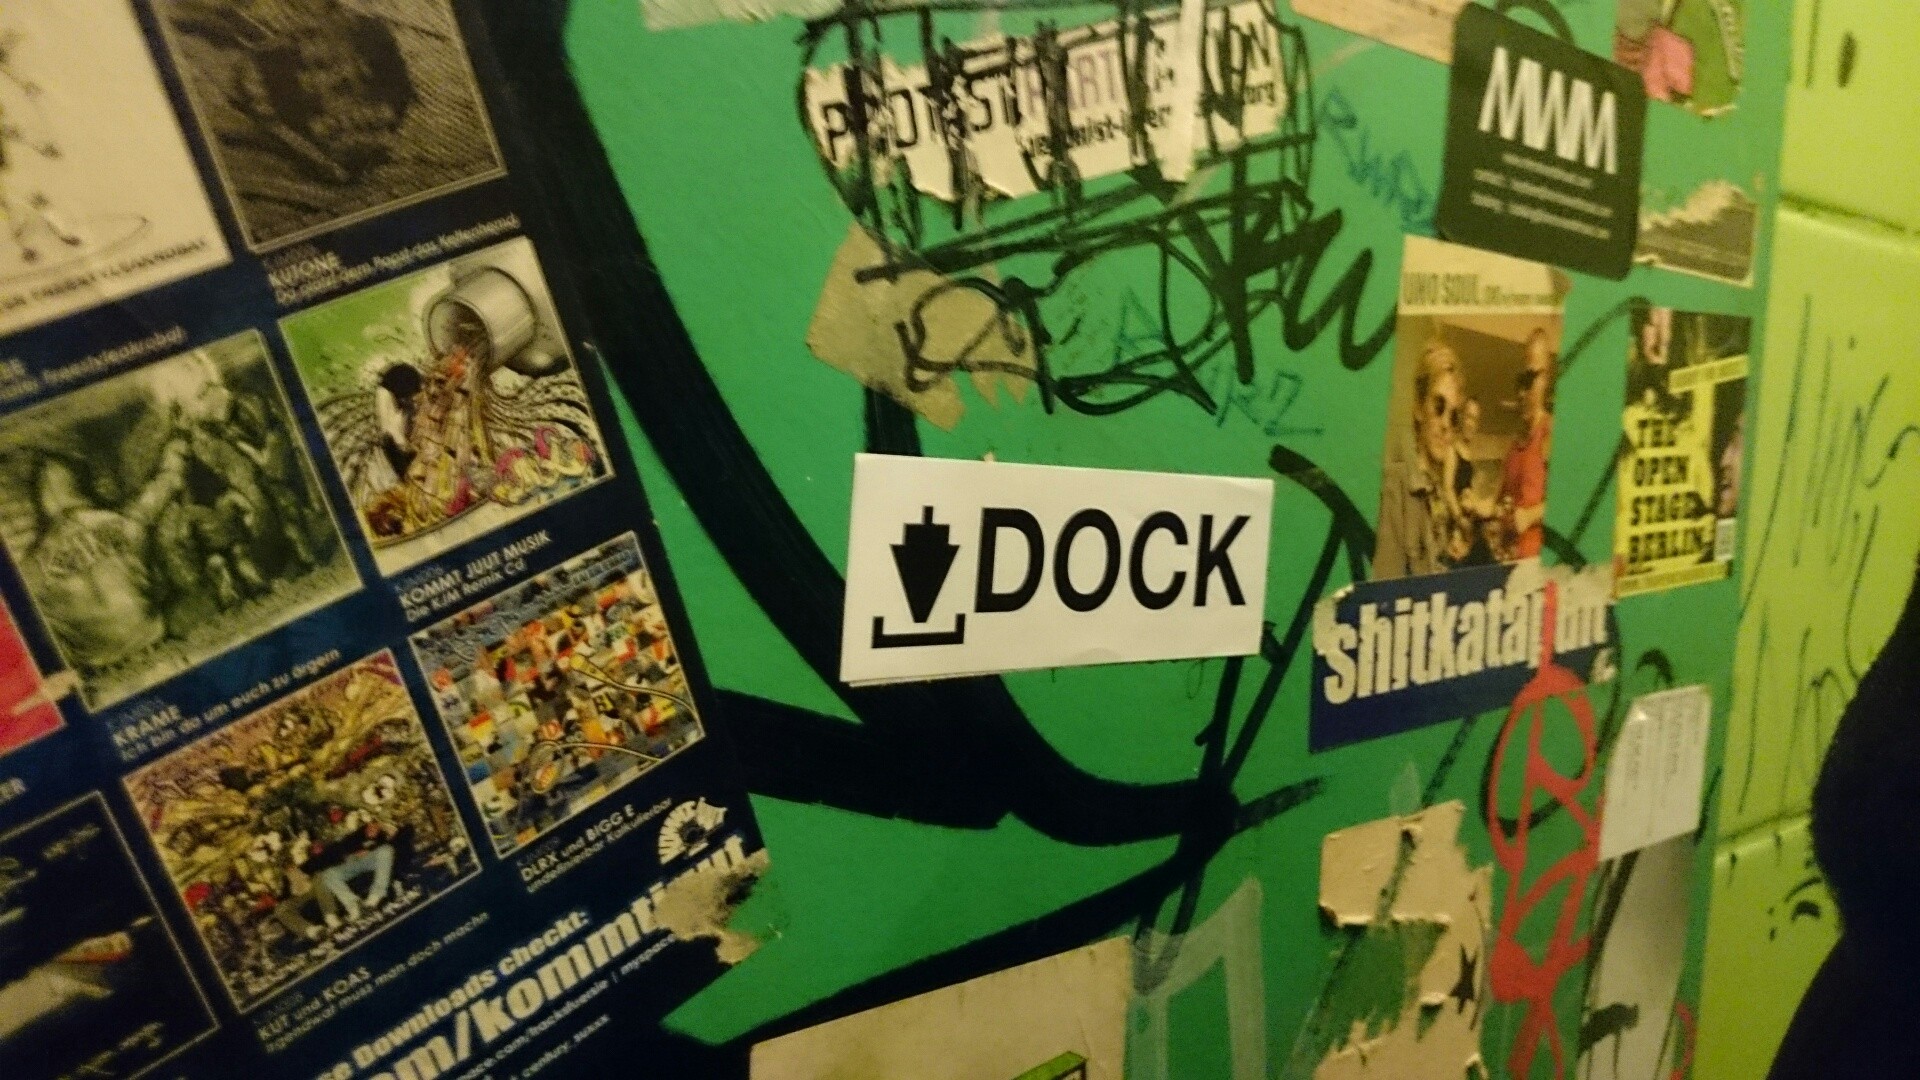 dock-door.JPG